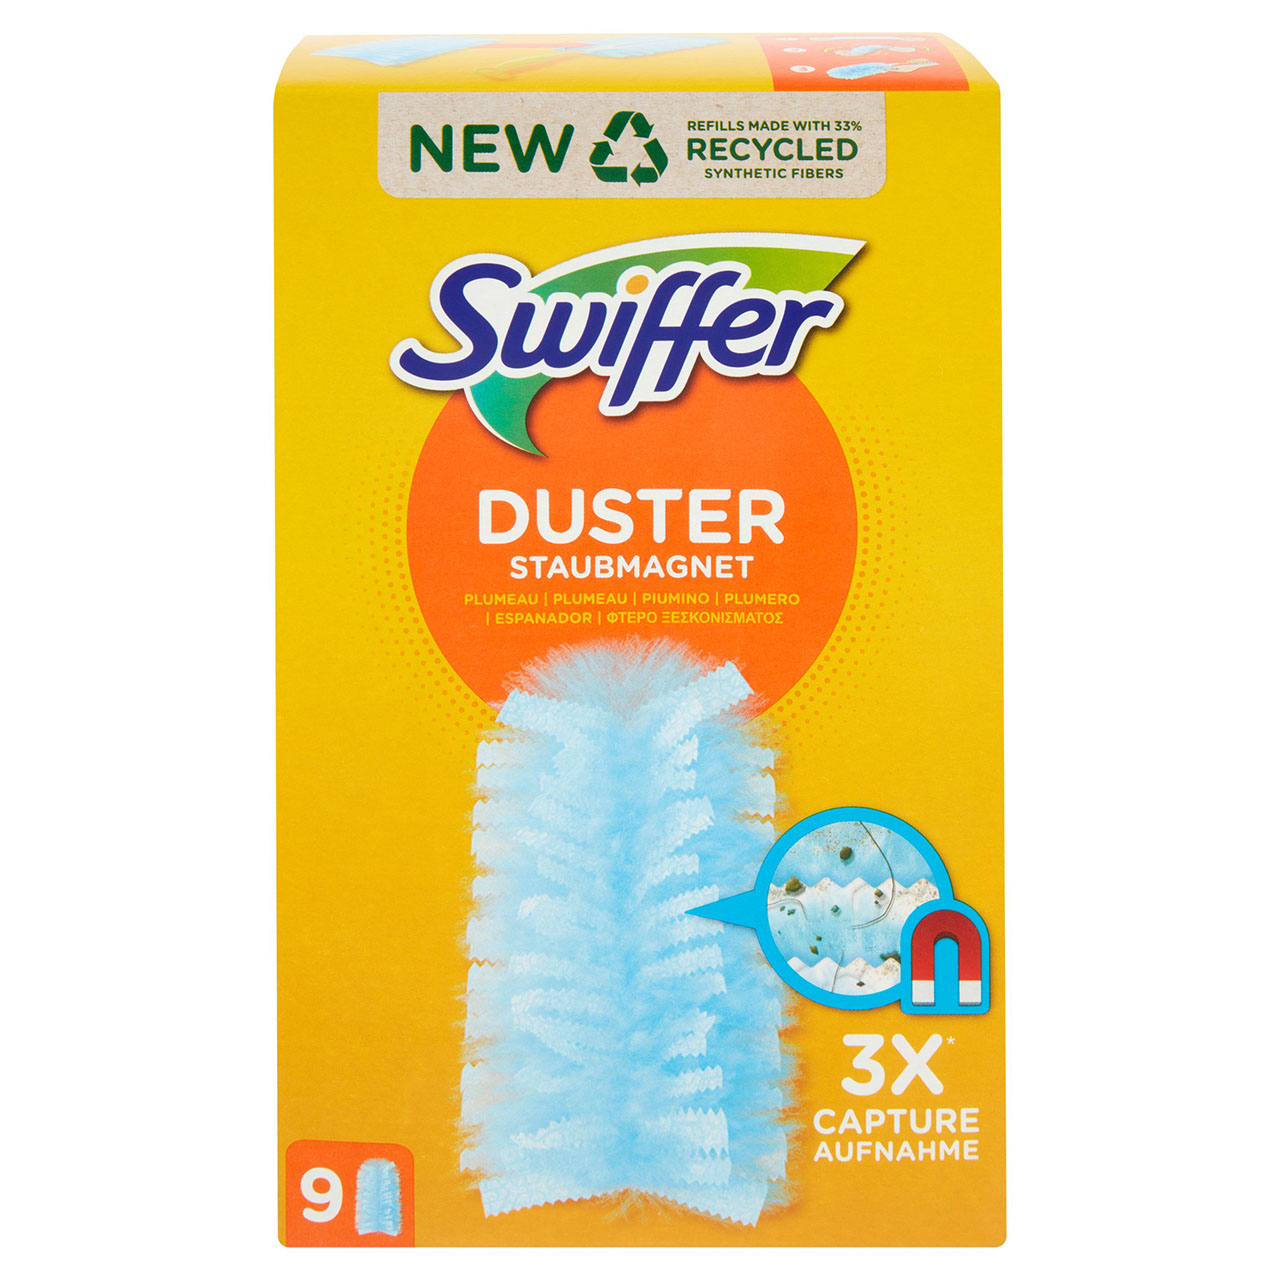 Swiffer Duster Kit + piumini catturapolvere, 1 pz Acquisti online sempre  convenienti